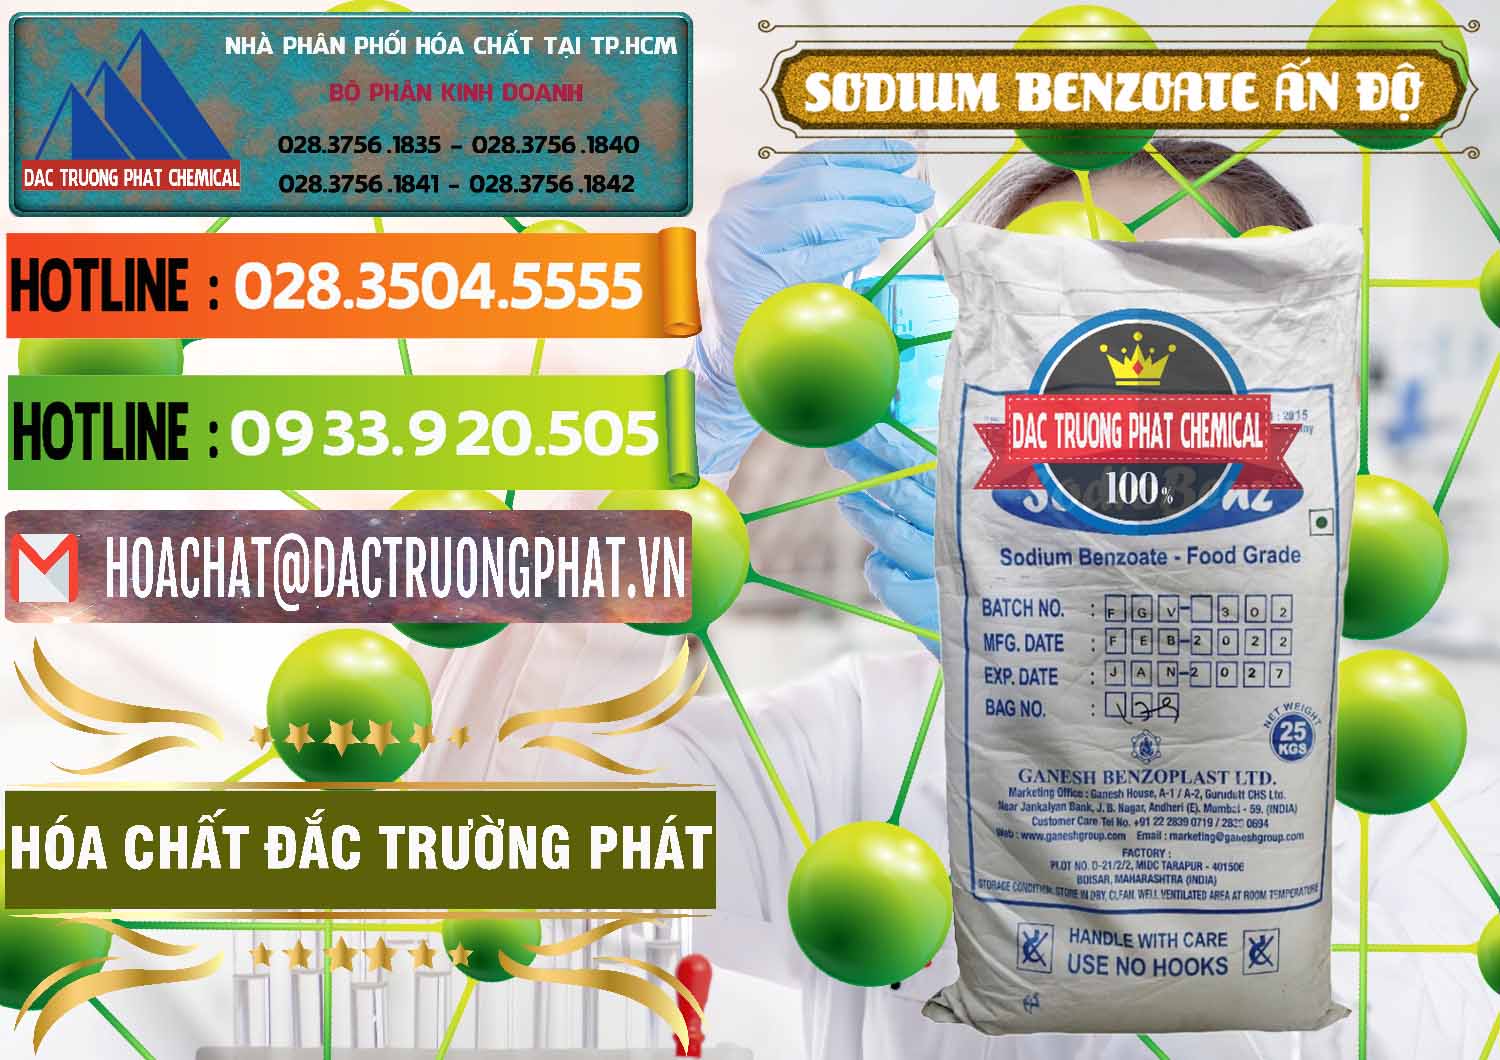 Nơi bán ( cung cấp ) Sodium Benzoate - Mốc Bột Ấn Độ India - 0361 - Nhà nhập khẩu & phân phối hóa chất tại TP.HCM - cungcaphoachat.com.vn